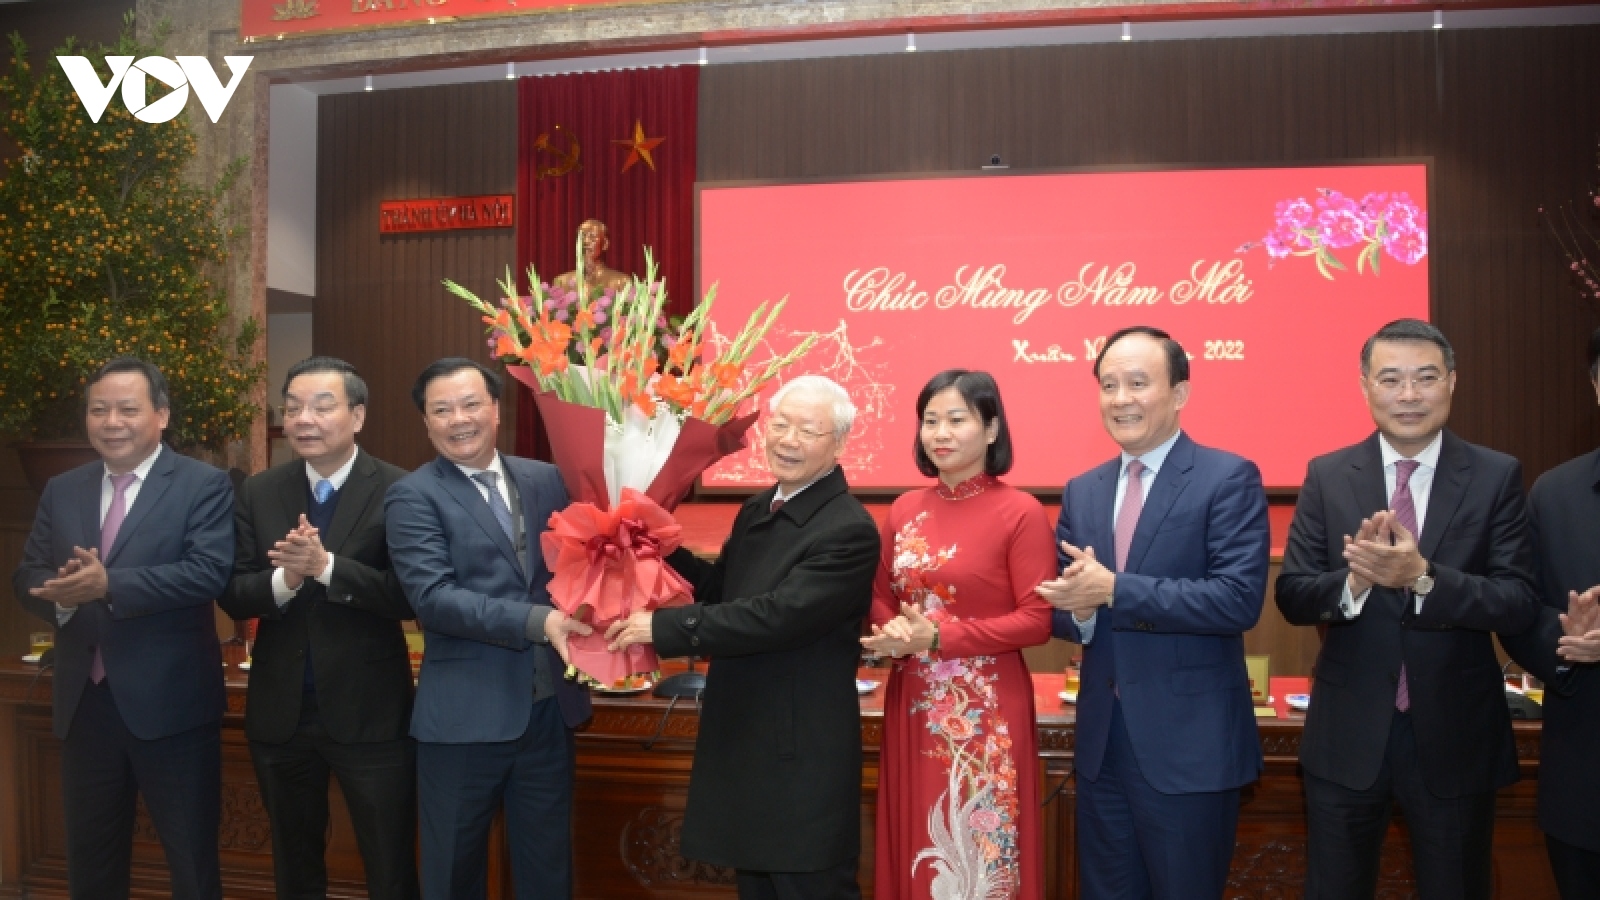 Tổng Bí thư Nguyễn Phú Trọng chúc Tết Đảng bộ, chính quyền và nhân dân Thủ đô Hà Nội